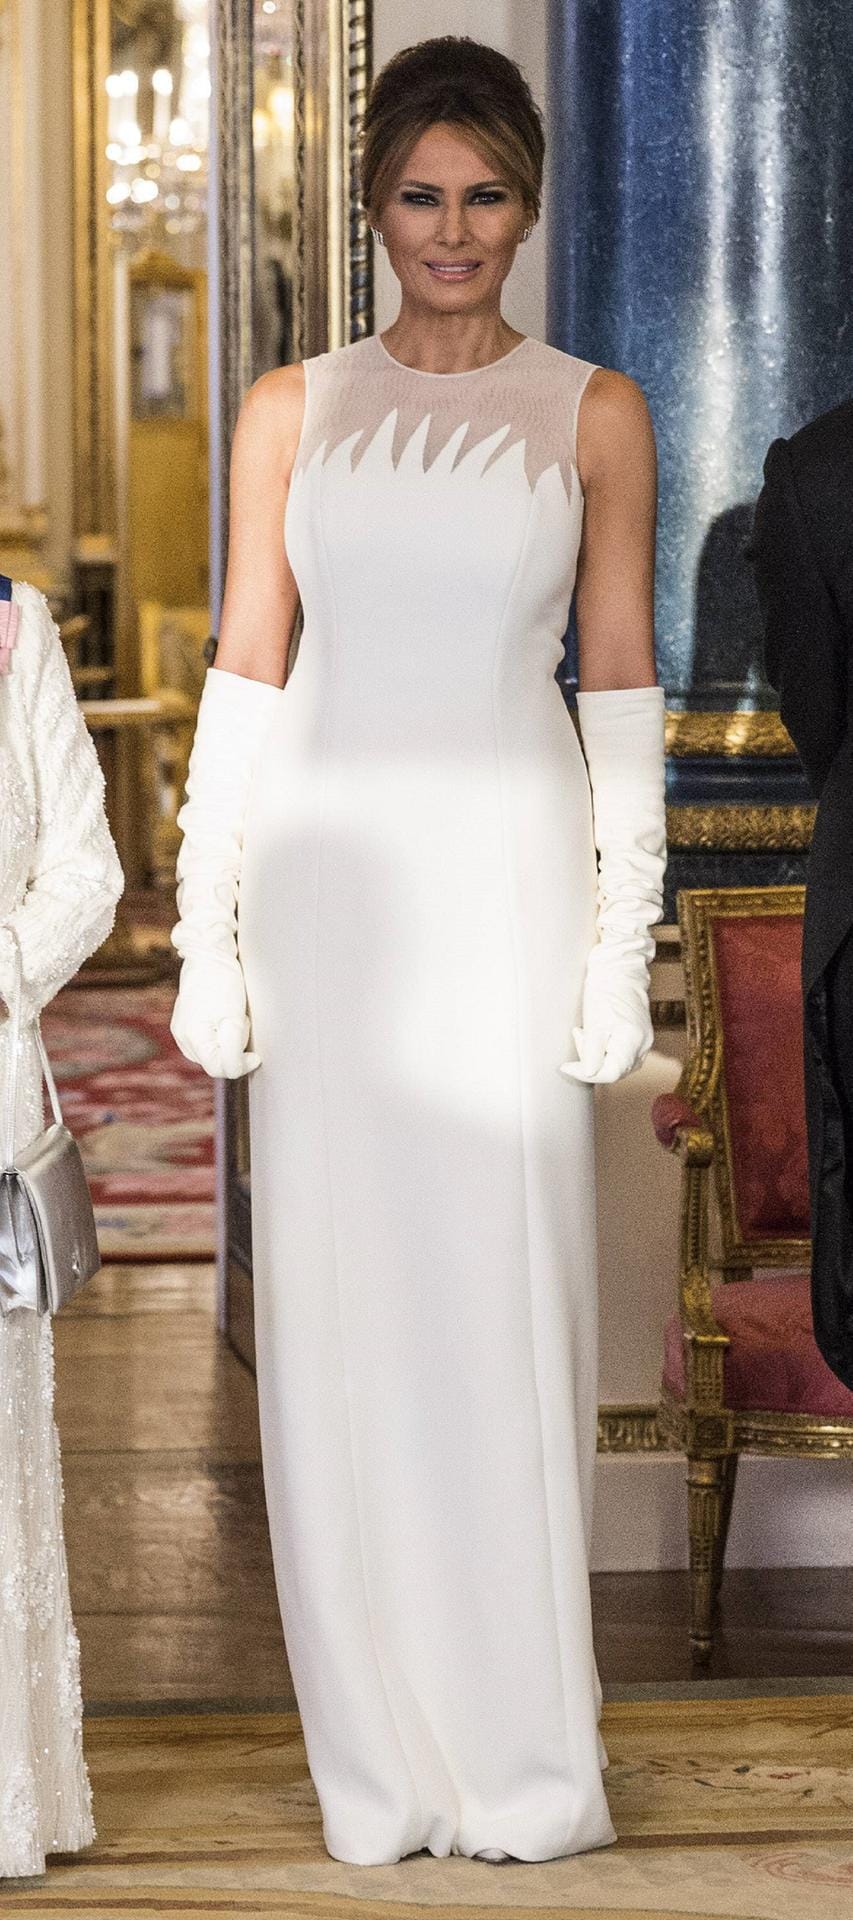 Melania Trump vor dem Staatsbankett: In einem Abendkleid von Dior präsentiert sich die First-Lady den Fotografen. Zu der hellen, schulterfreien Robe trägt sie im gleichen Farbton lange Handschuh.